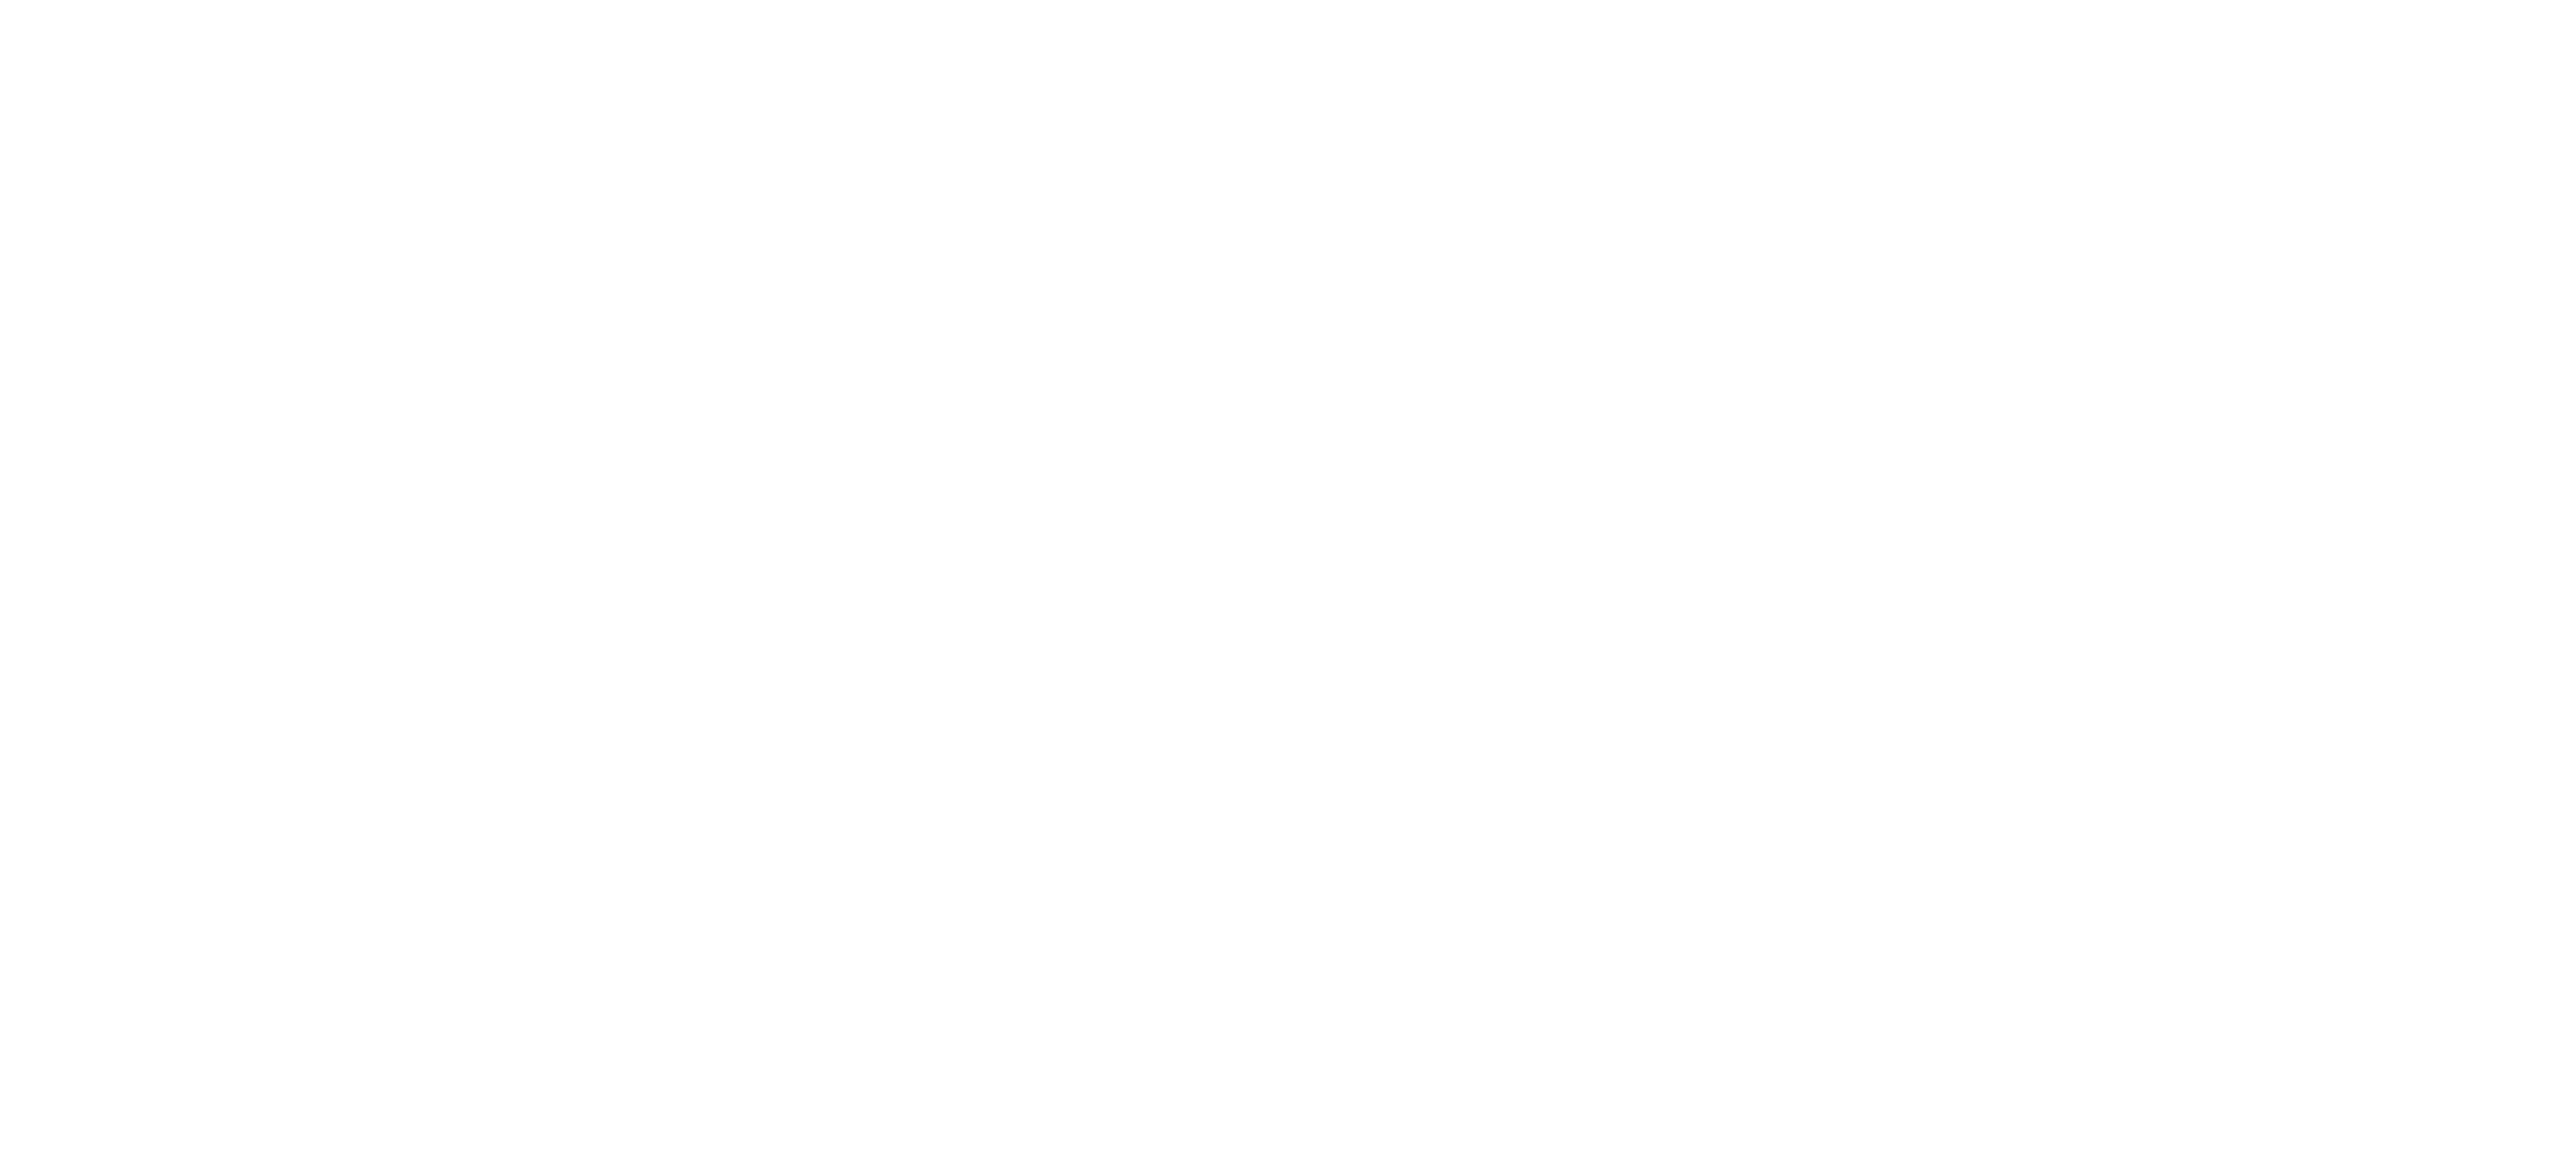 matrocks_logo_white-01.png